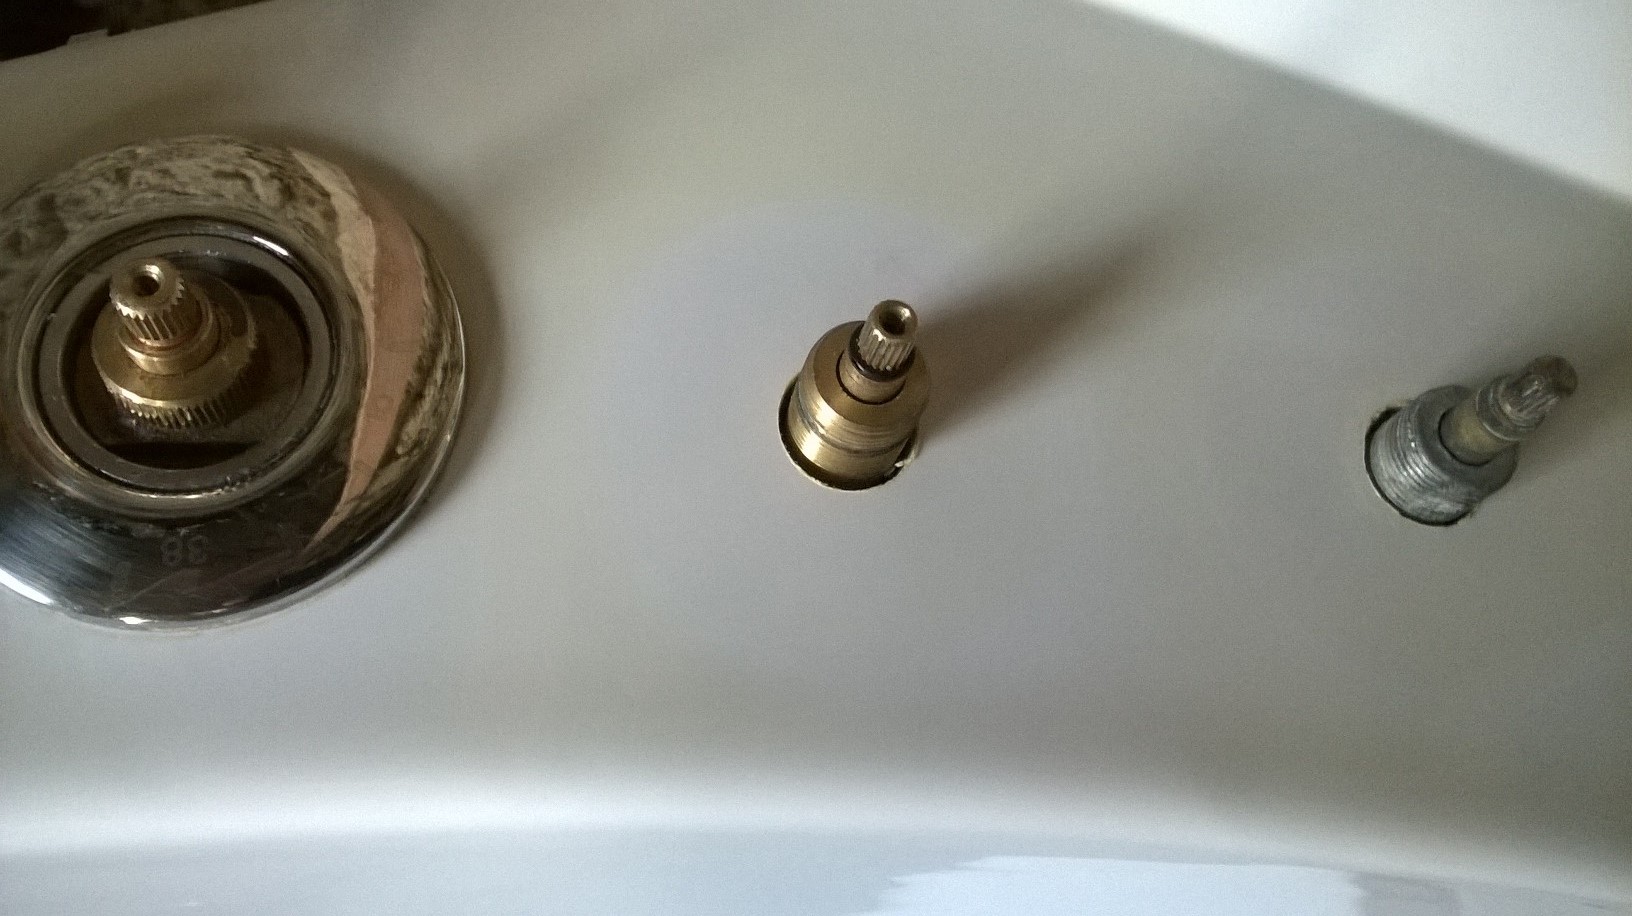 Bricolage - Comment débloquer un robinet thermostatique de